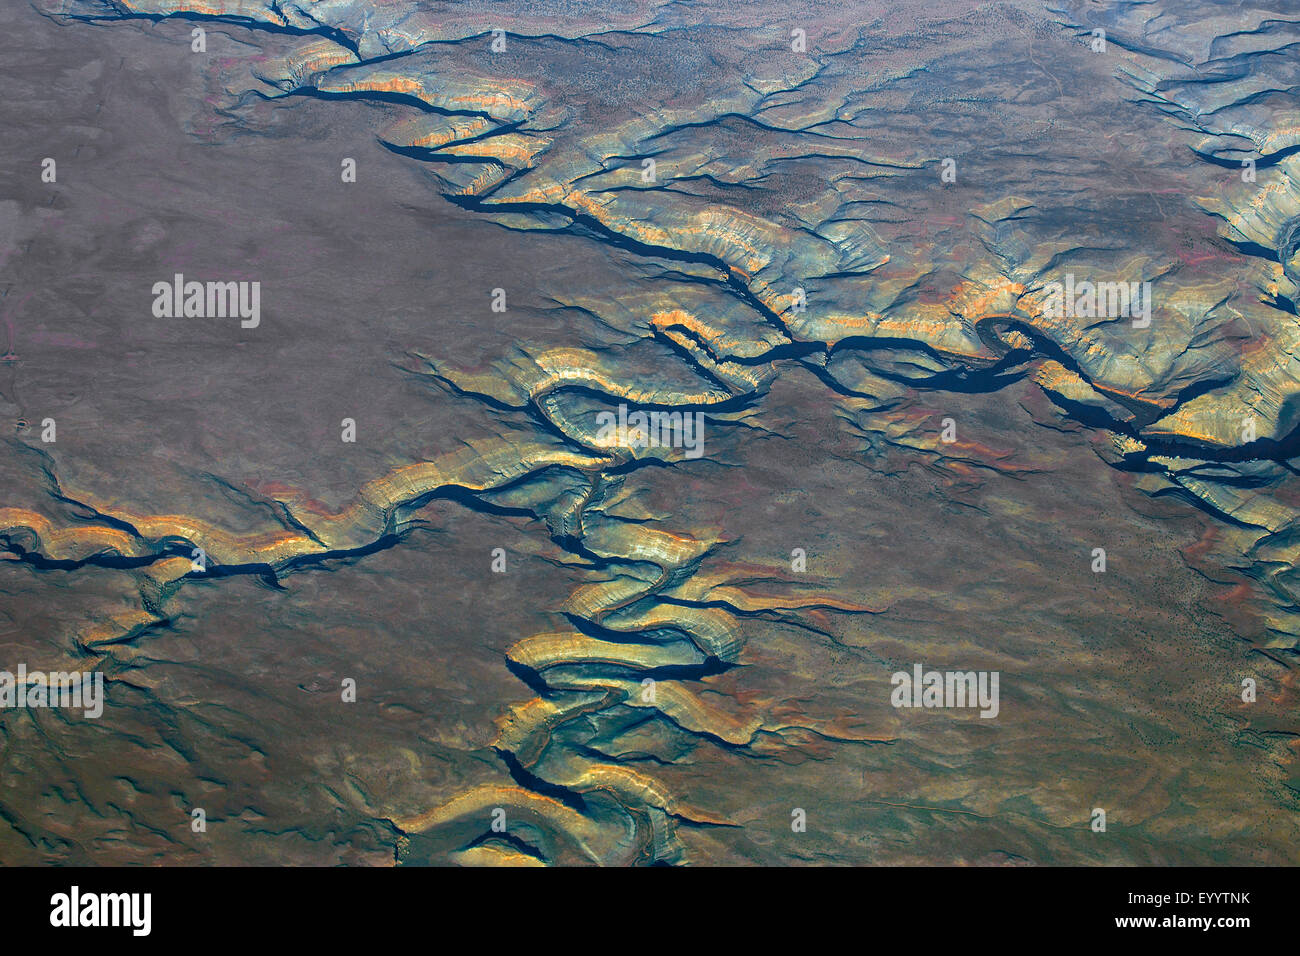 Colorado-Plateau, Grand Canyon, vue aérienne, USA Banque D'Images